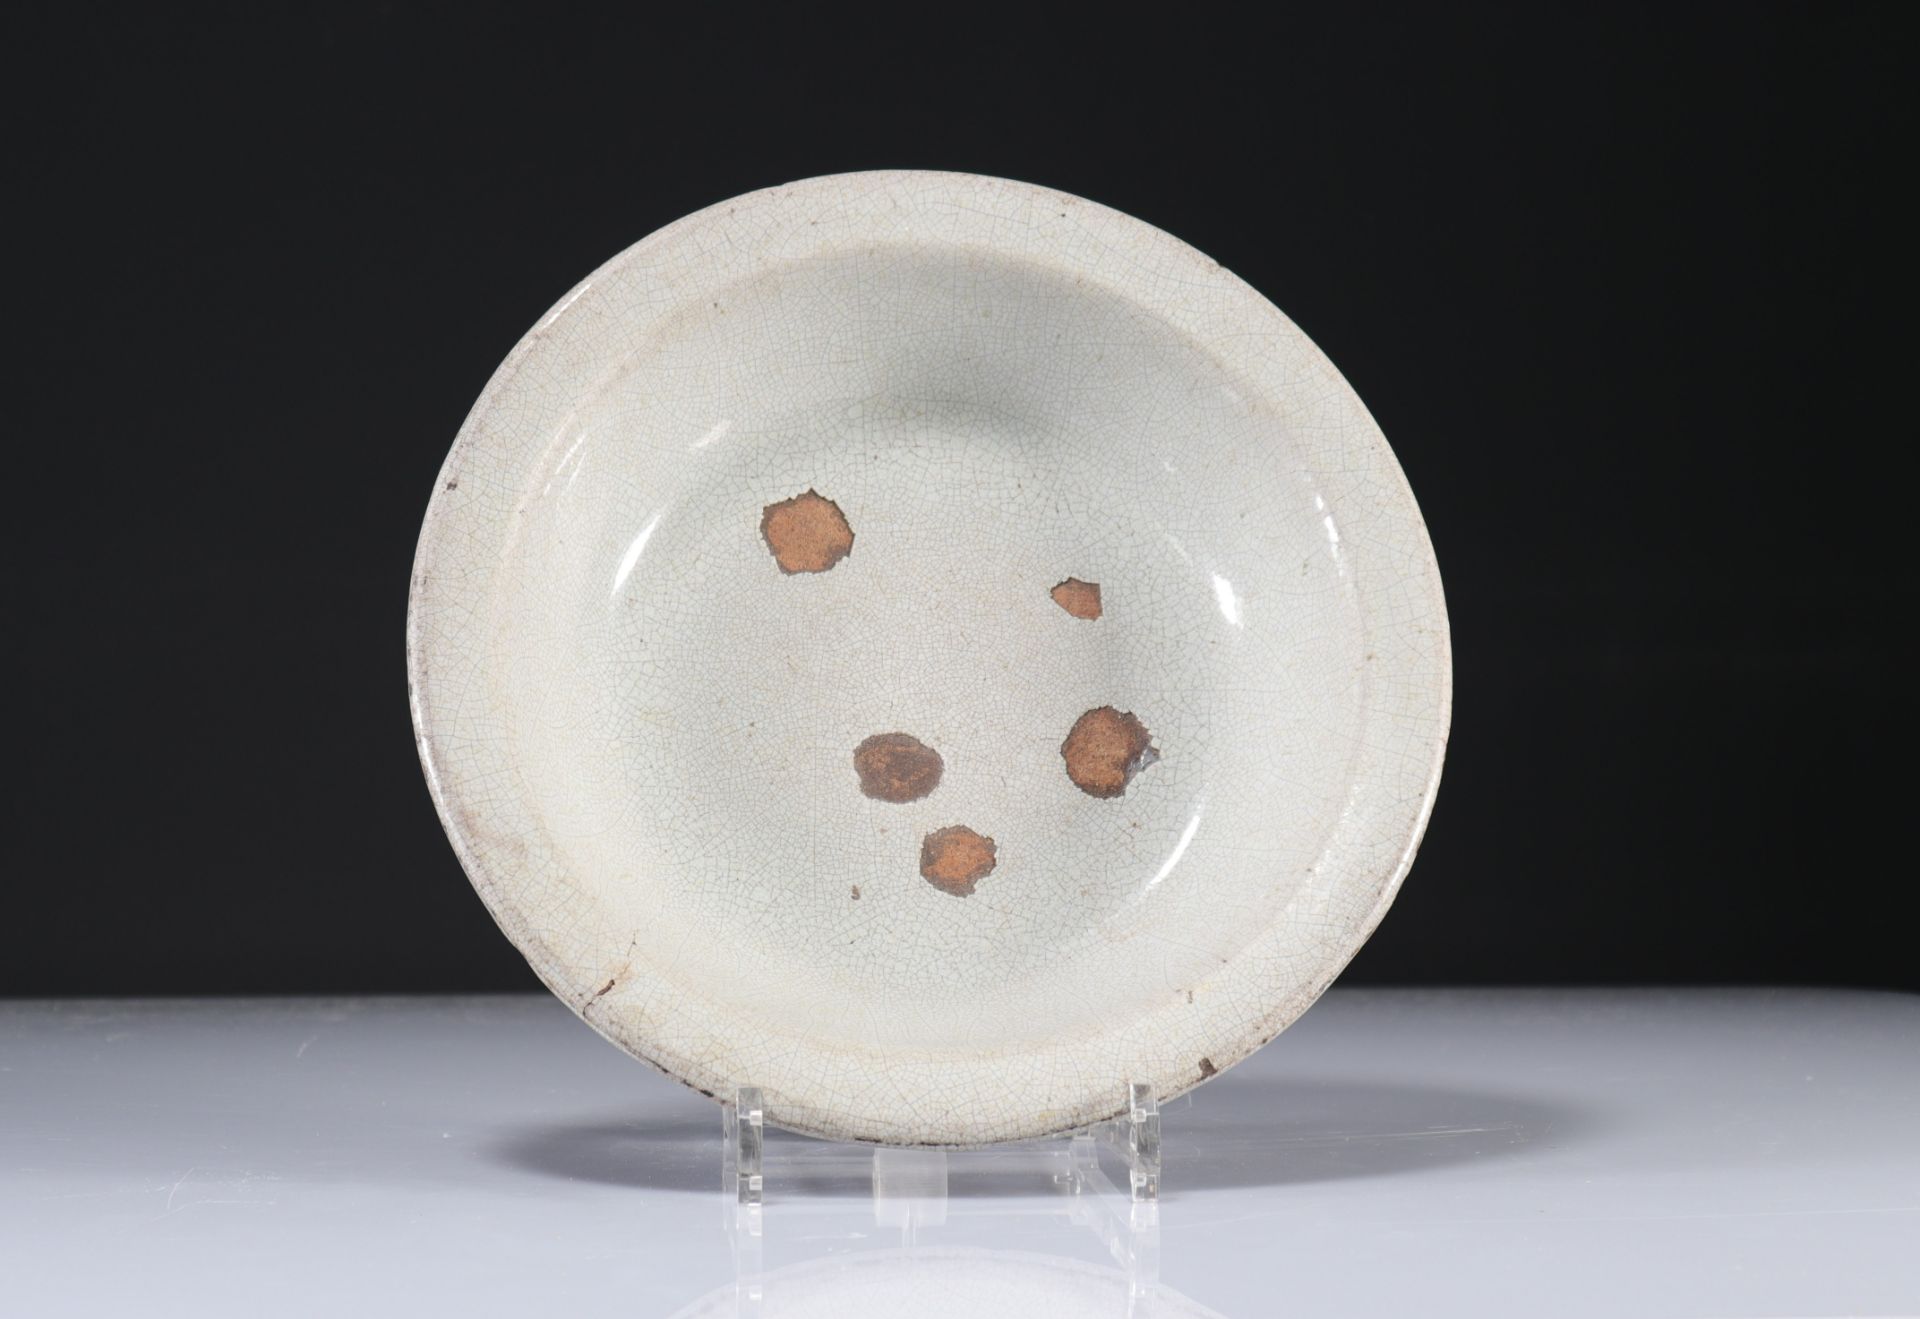 Crackled celadon china porcelain plate